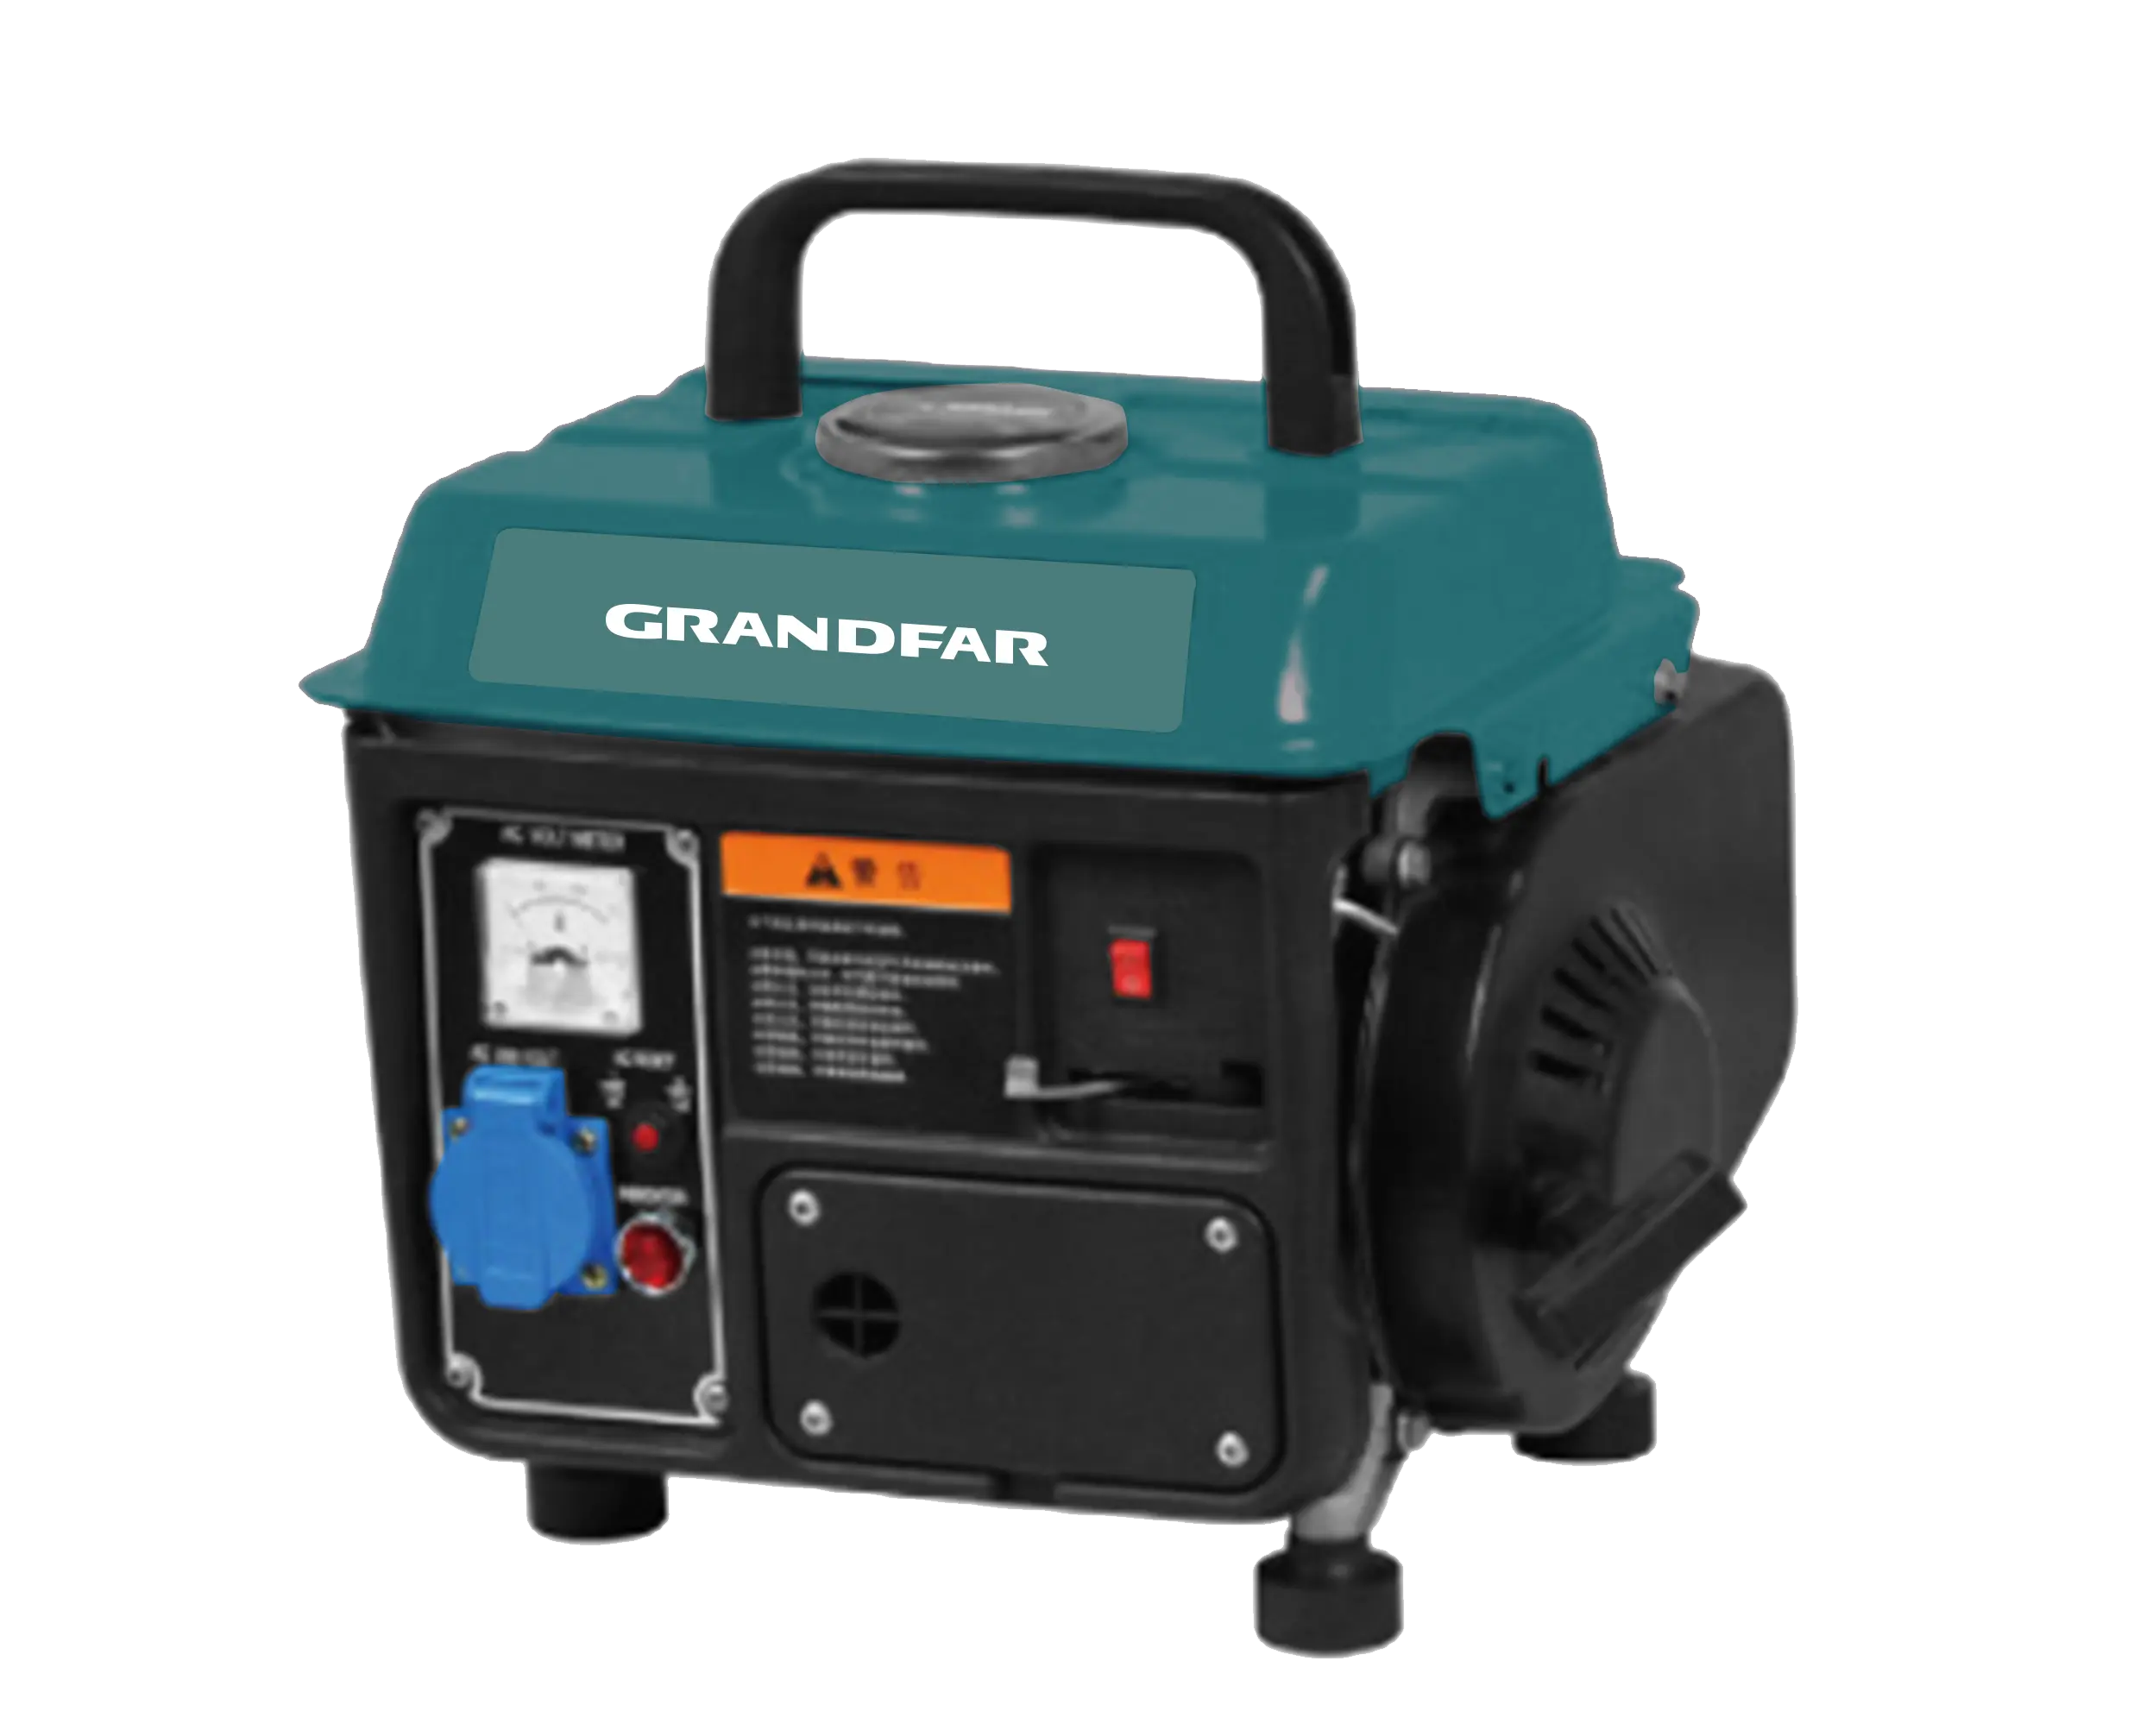 GRANDFAR 900W المحمولة البسيطة ماكينات محركات 3600rpm 2.5Hp 4L 2-السكتة الدماغية الصامتة 63cc الغاز مولد بنزين أدوات أسعار للمنزل